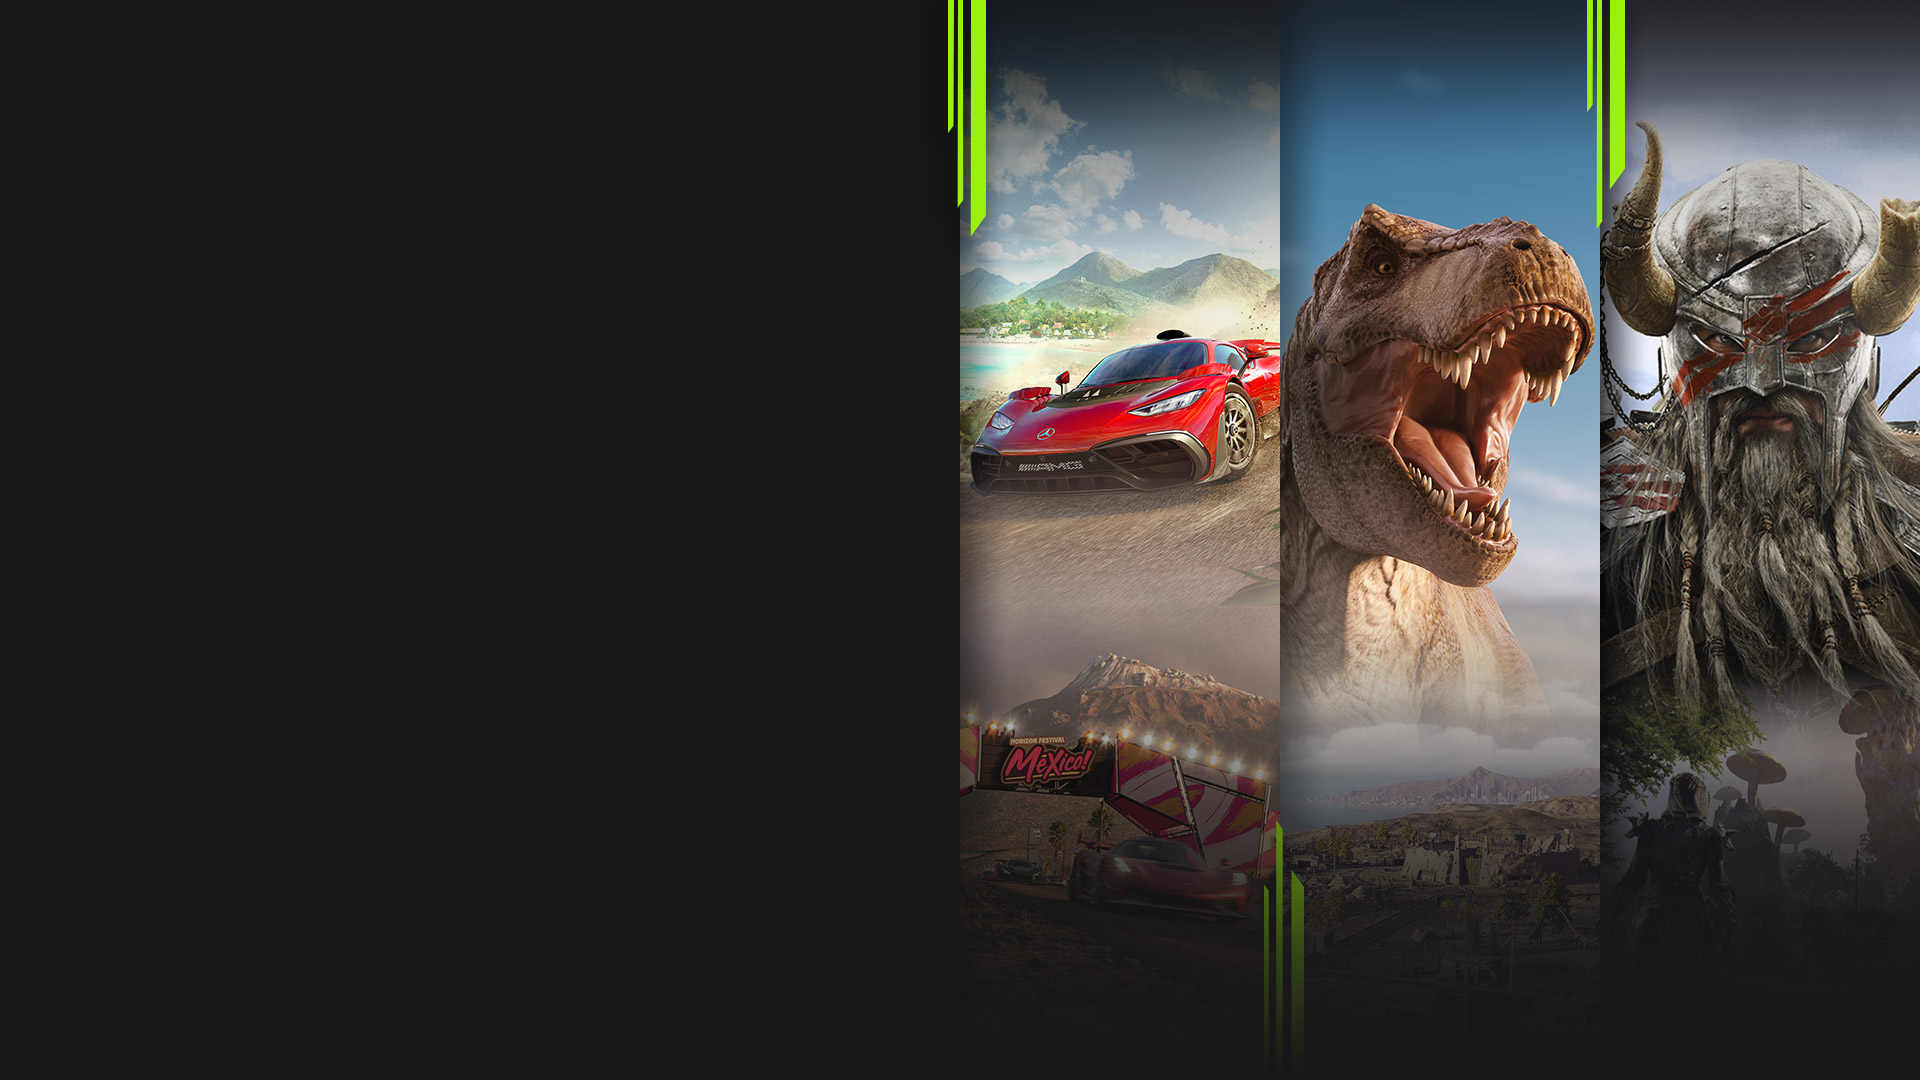 Imágenes de varios juegos disponibles ahora con Xbox Game Pass, incluidos Forza Horizon 5, Jurassic World Evolution 2, The Elder Scrolls Online y Halo Infinite.